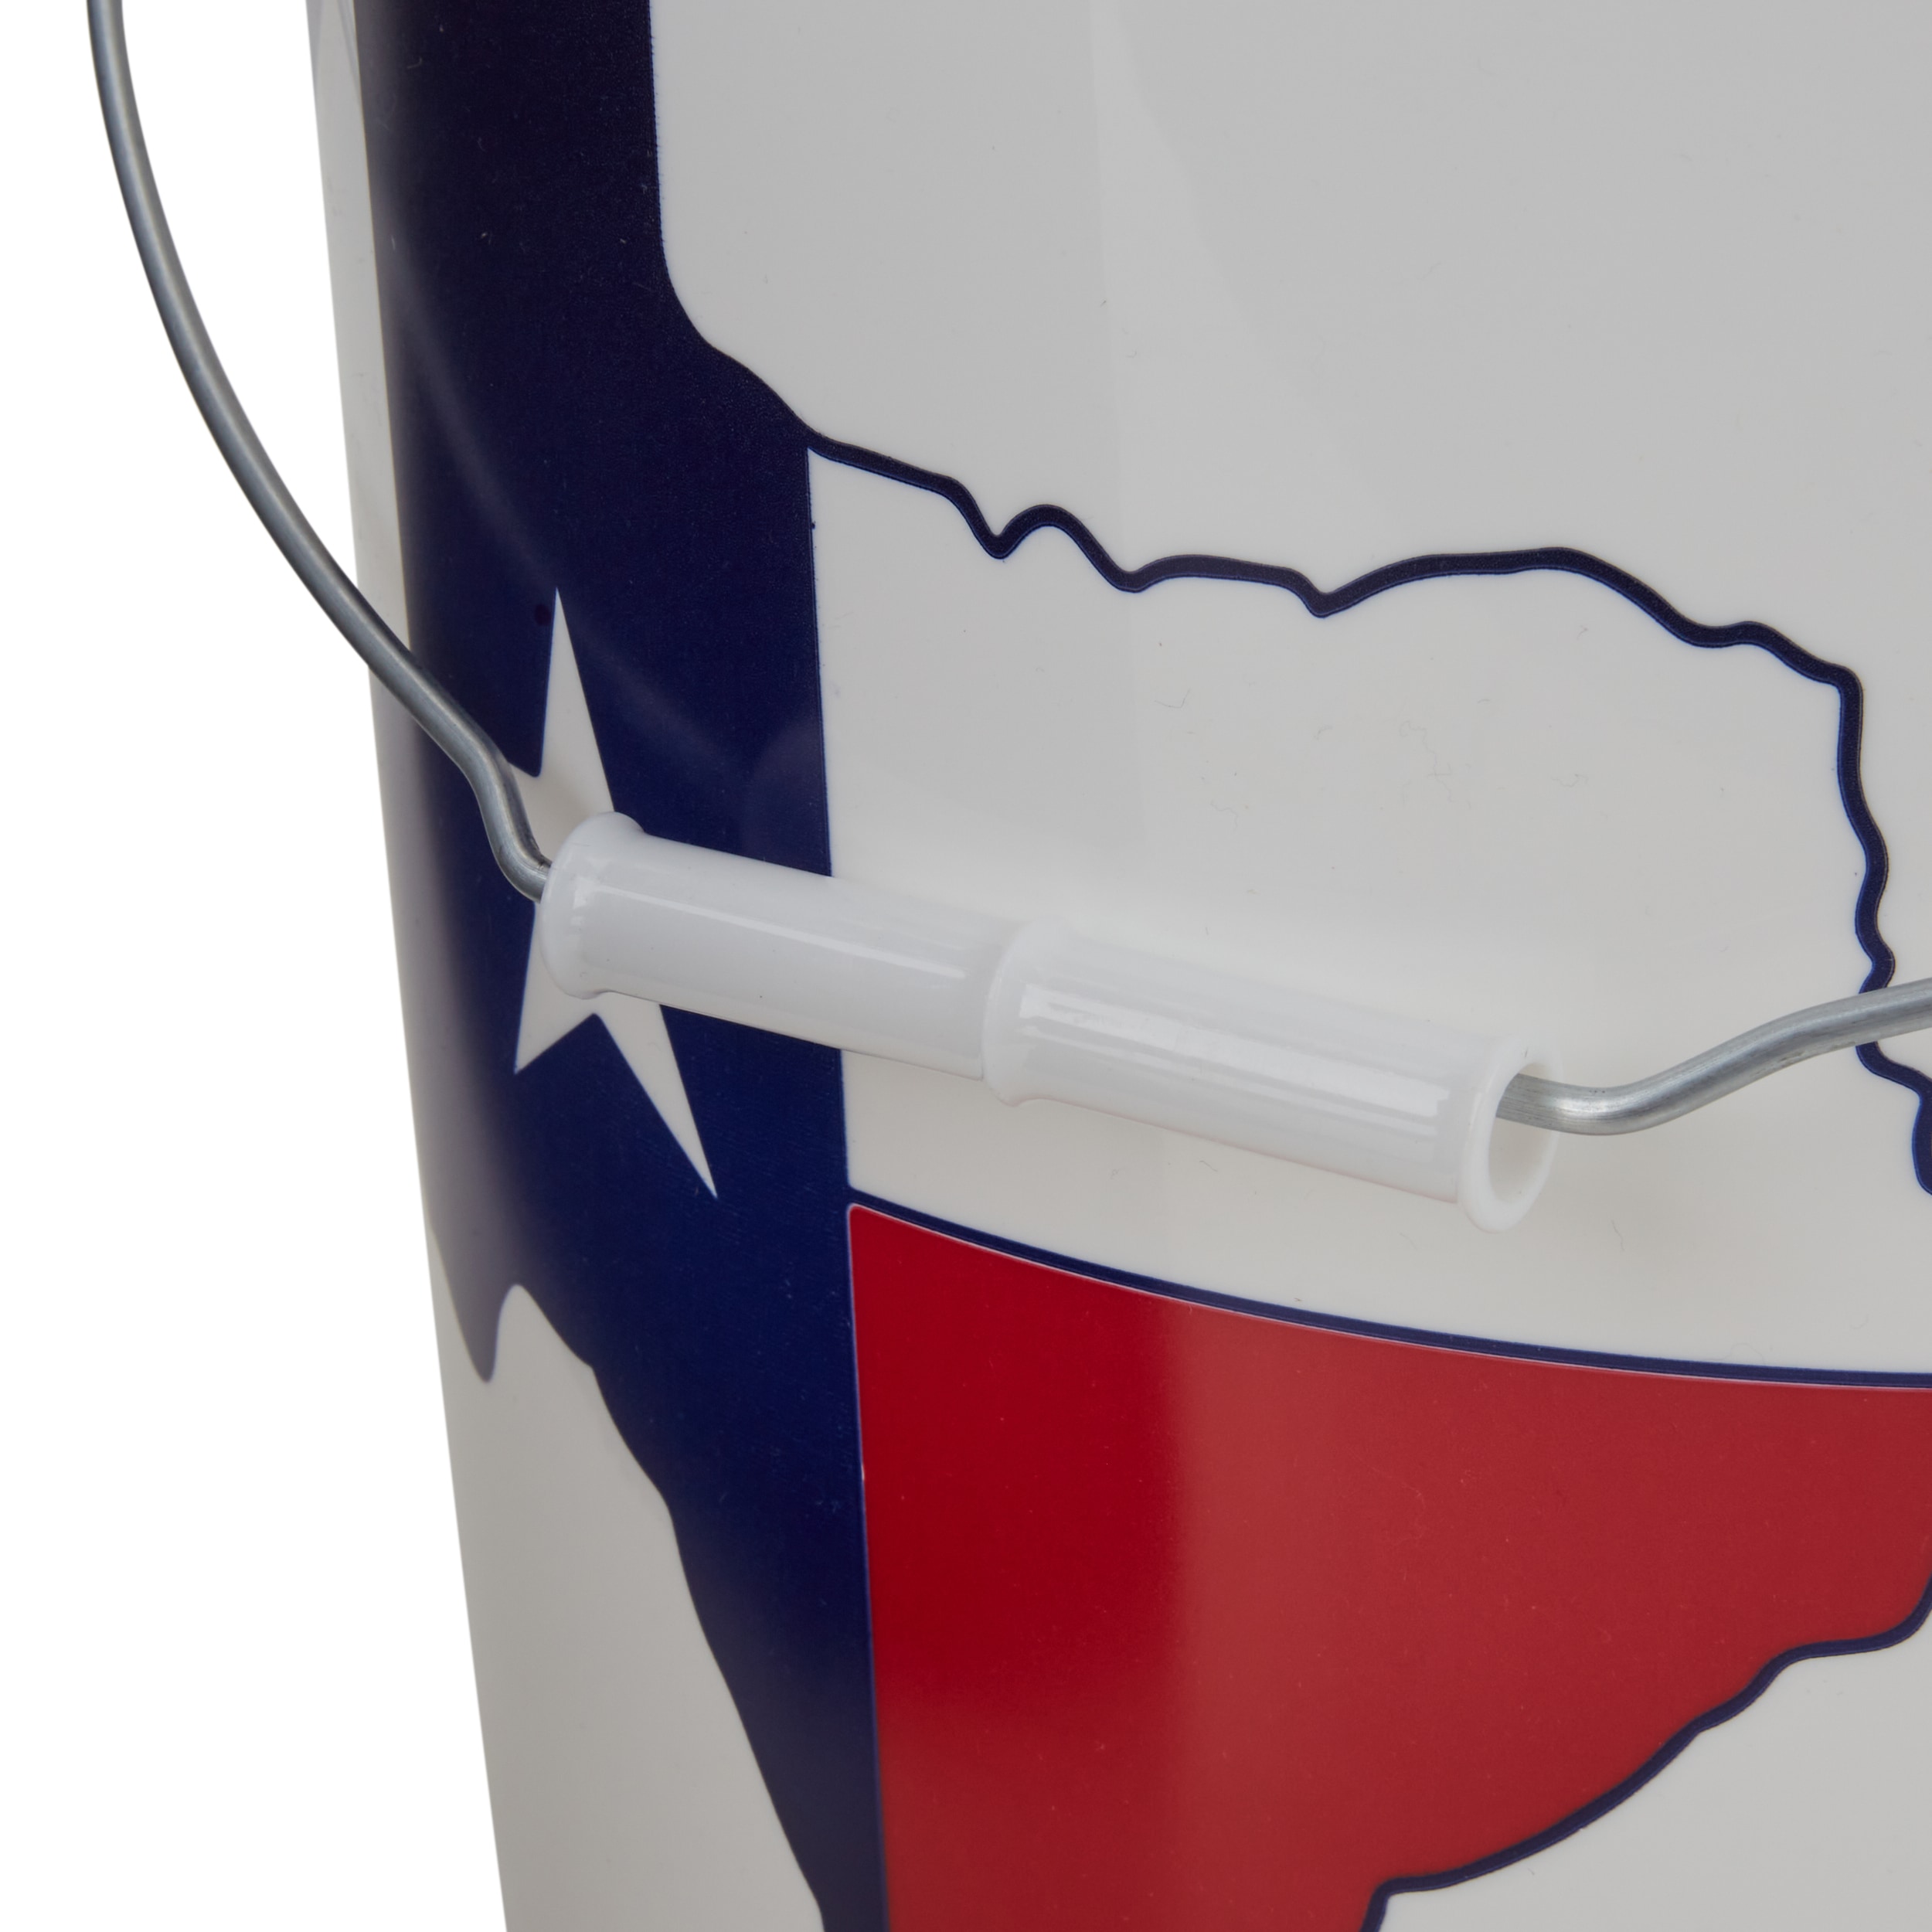 5 Gal. Texas Flag Bucket with Foam Grip